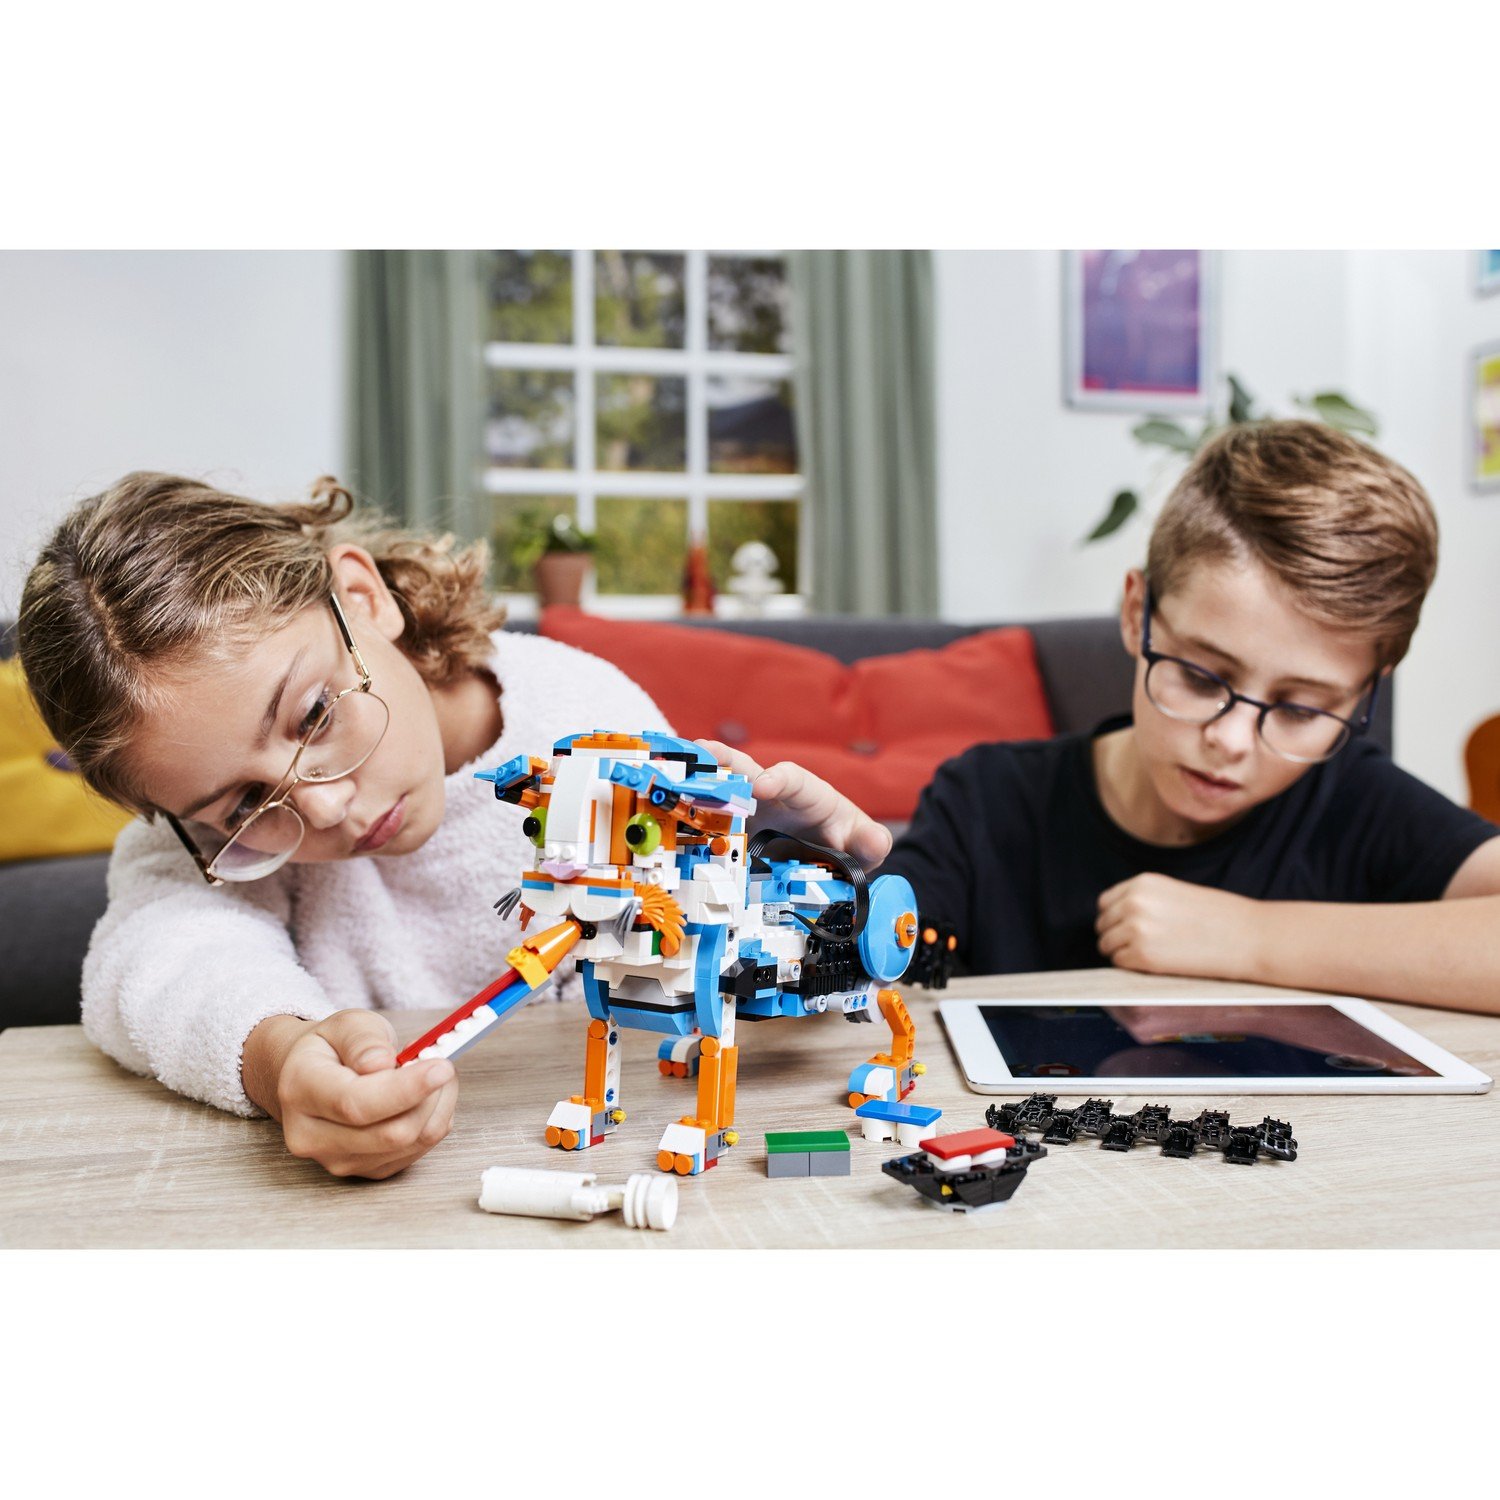 Конструктор LEGO BOOST  Набор для конструирования и программирования (17101) - фото 13